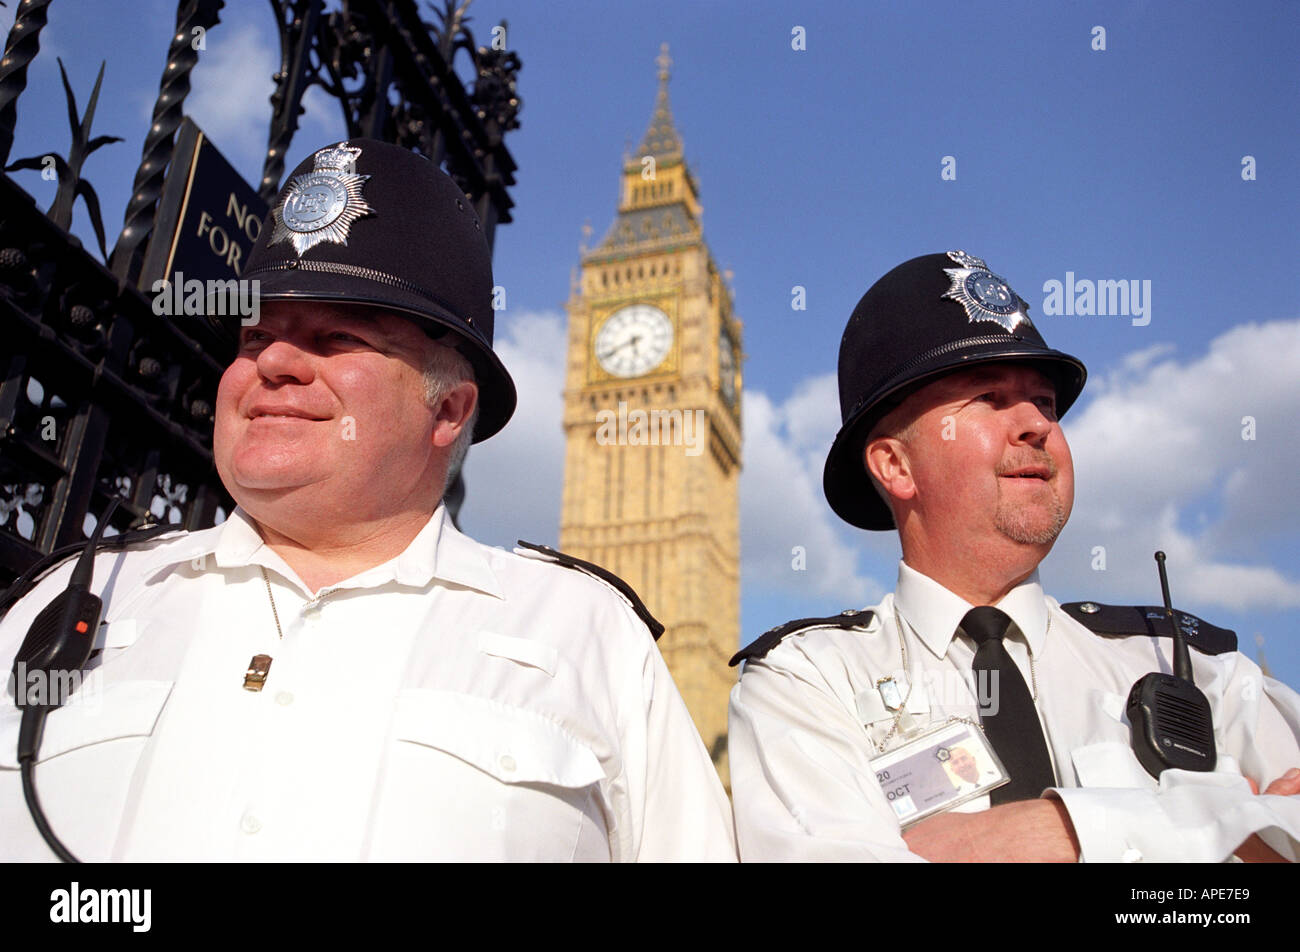 La police devant les Chambres du Parlement montrant Big Ben à Londres, Angleterre, Royaume-Uni Banque D'Images